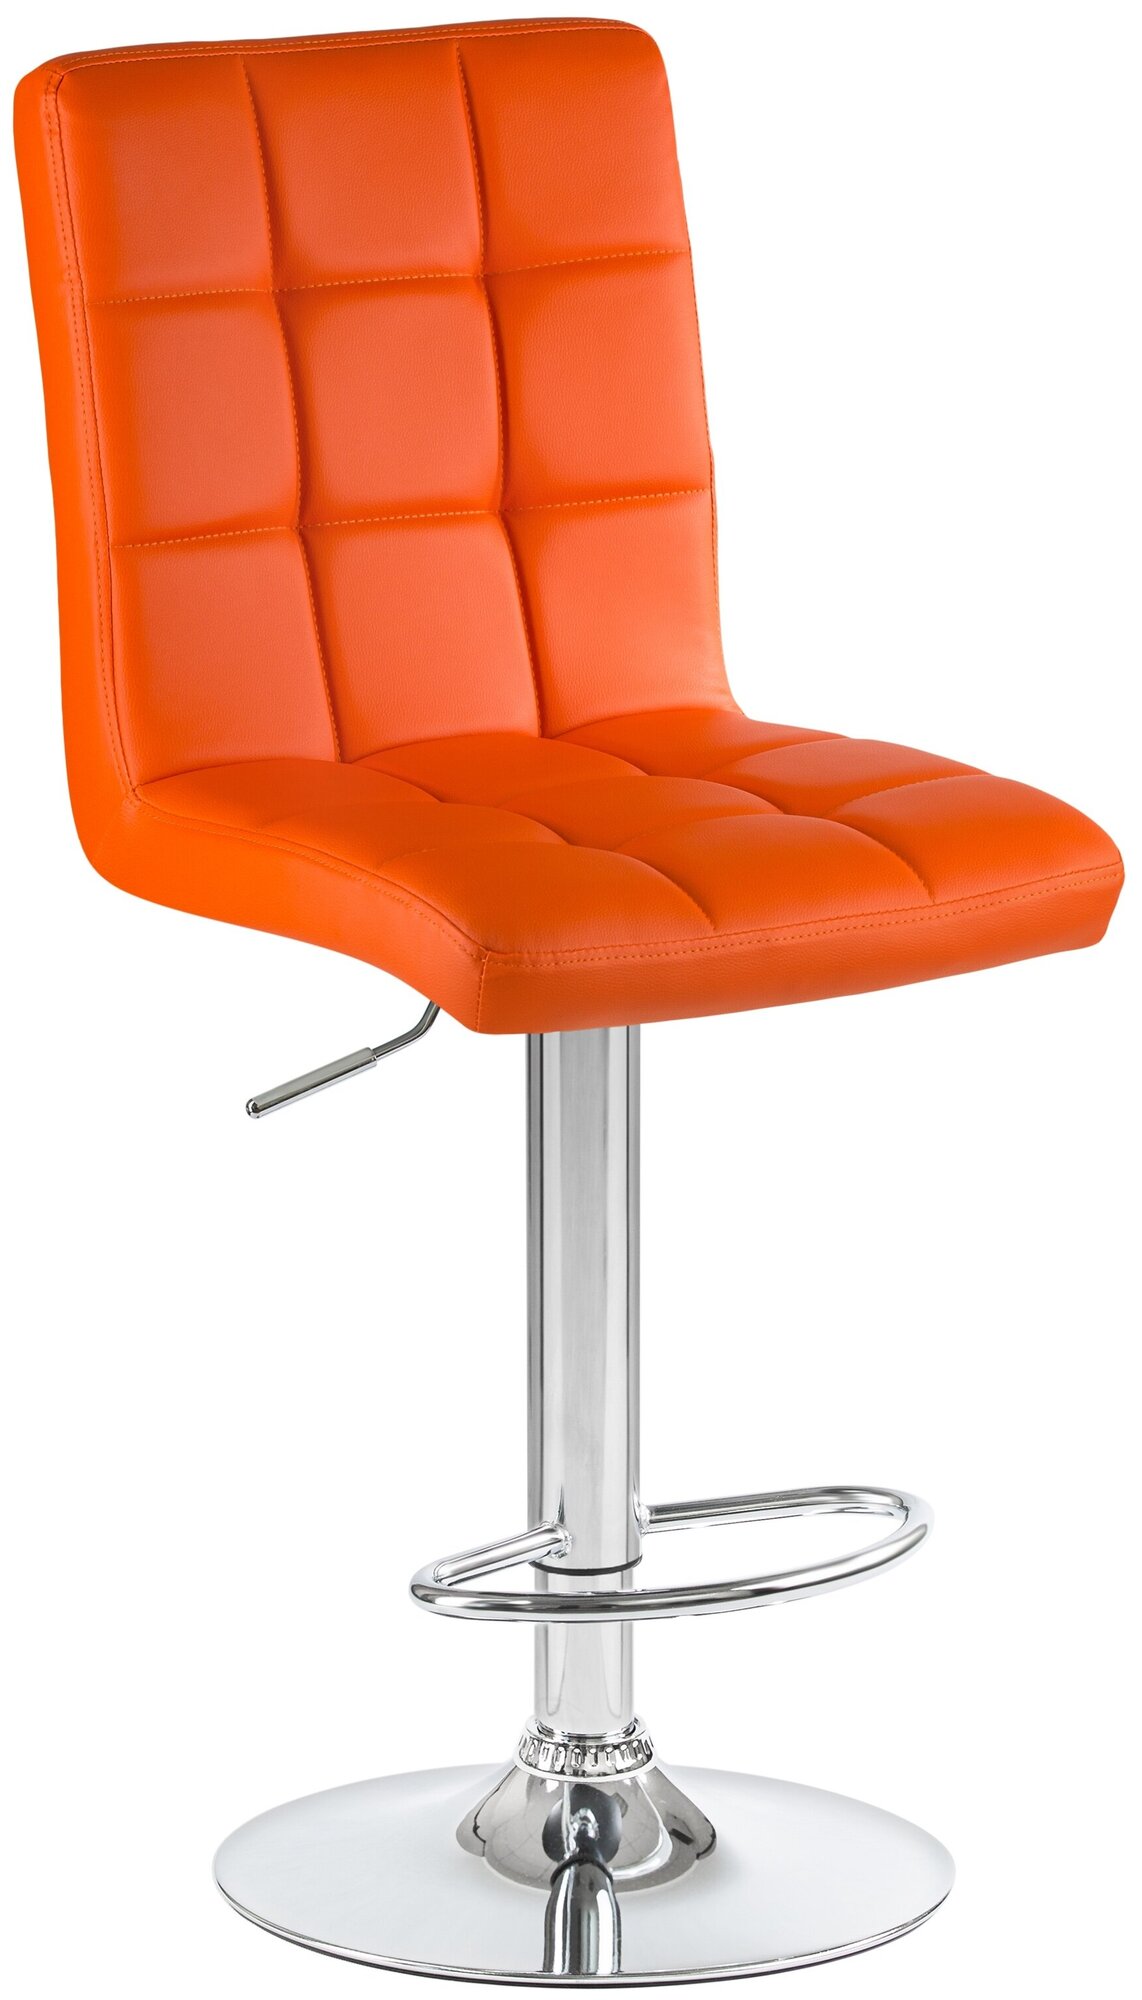 Стул барный KRUGER LM-5009, цвет сиденья оранжевый, цвет основания хром